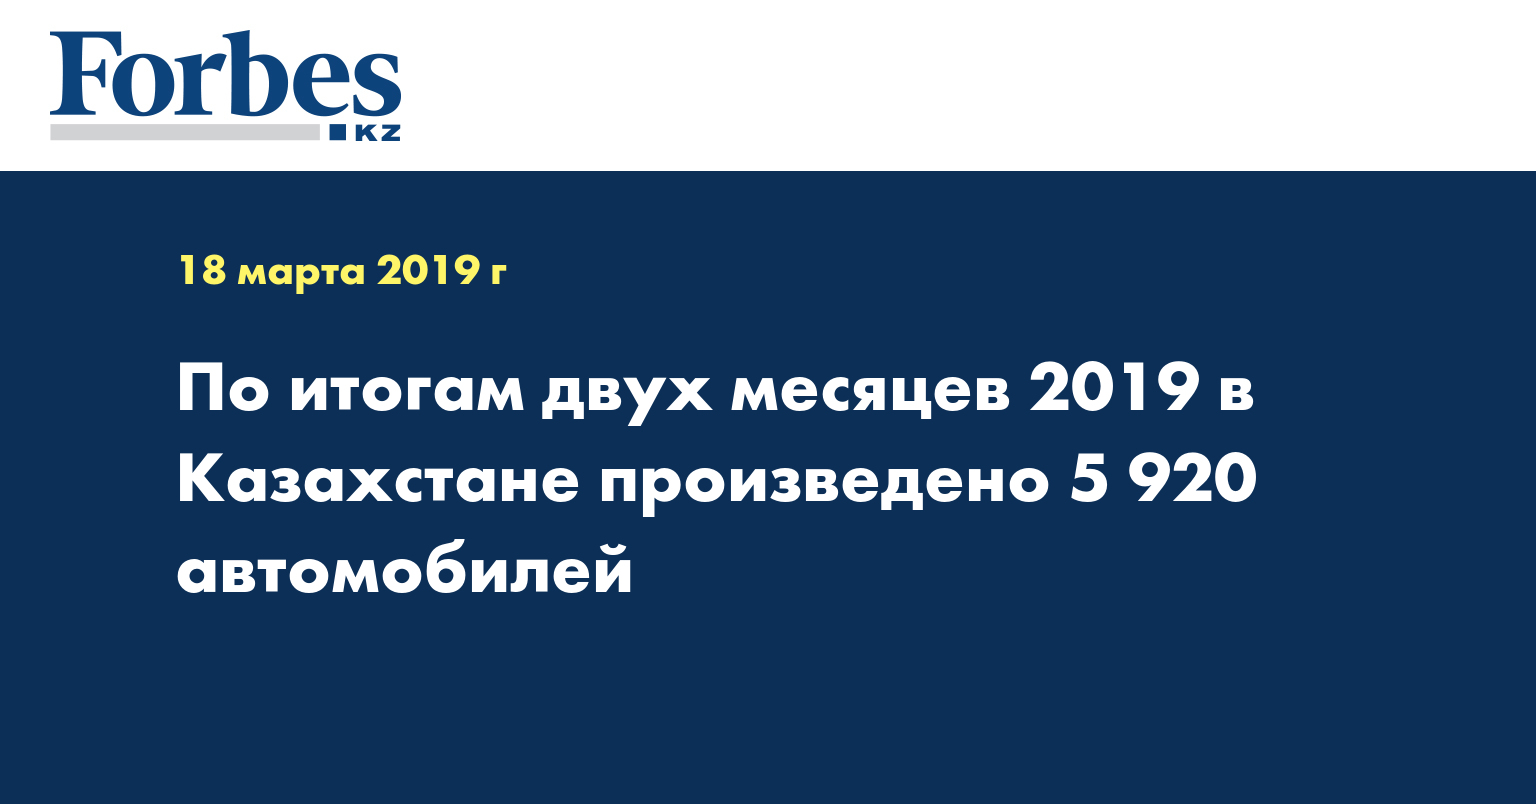 По итогам двух месяцев 2019 в Казахстане произведено 5 920 автомобилей